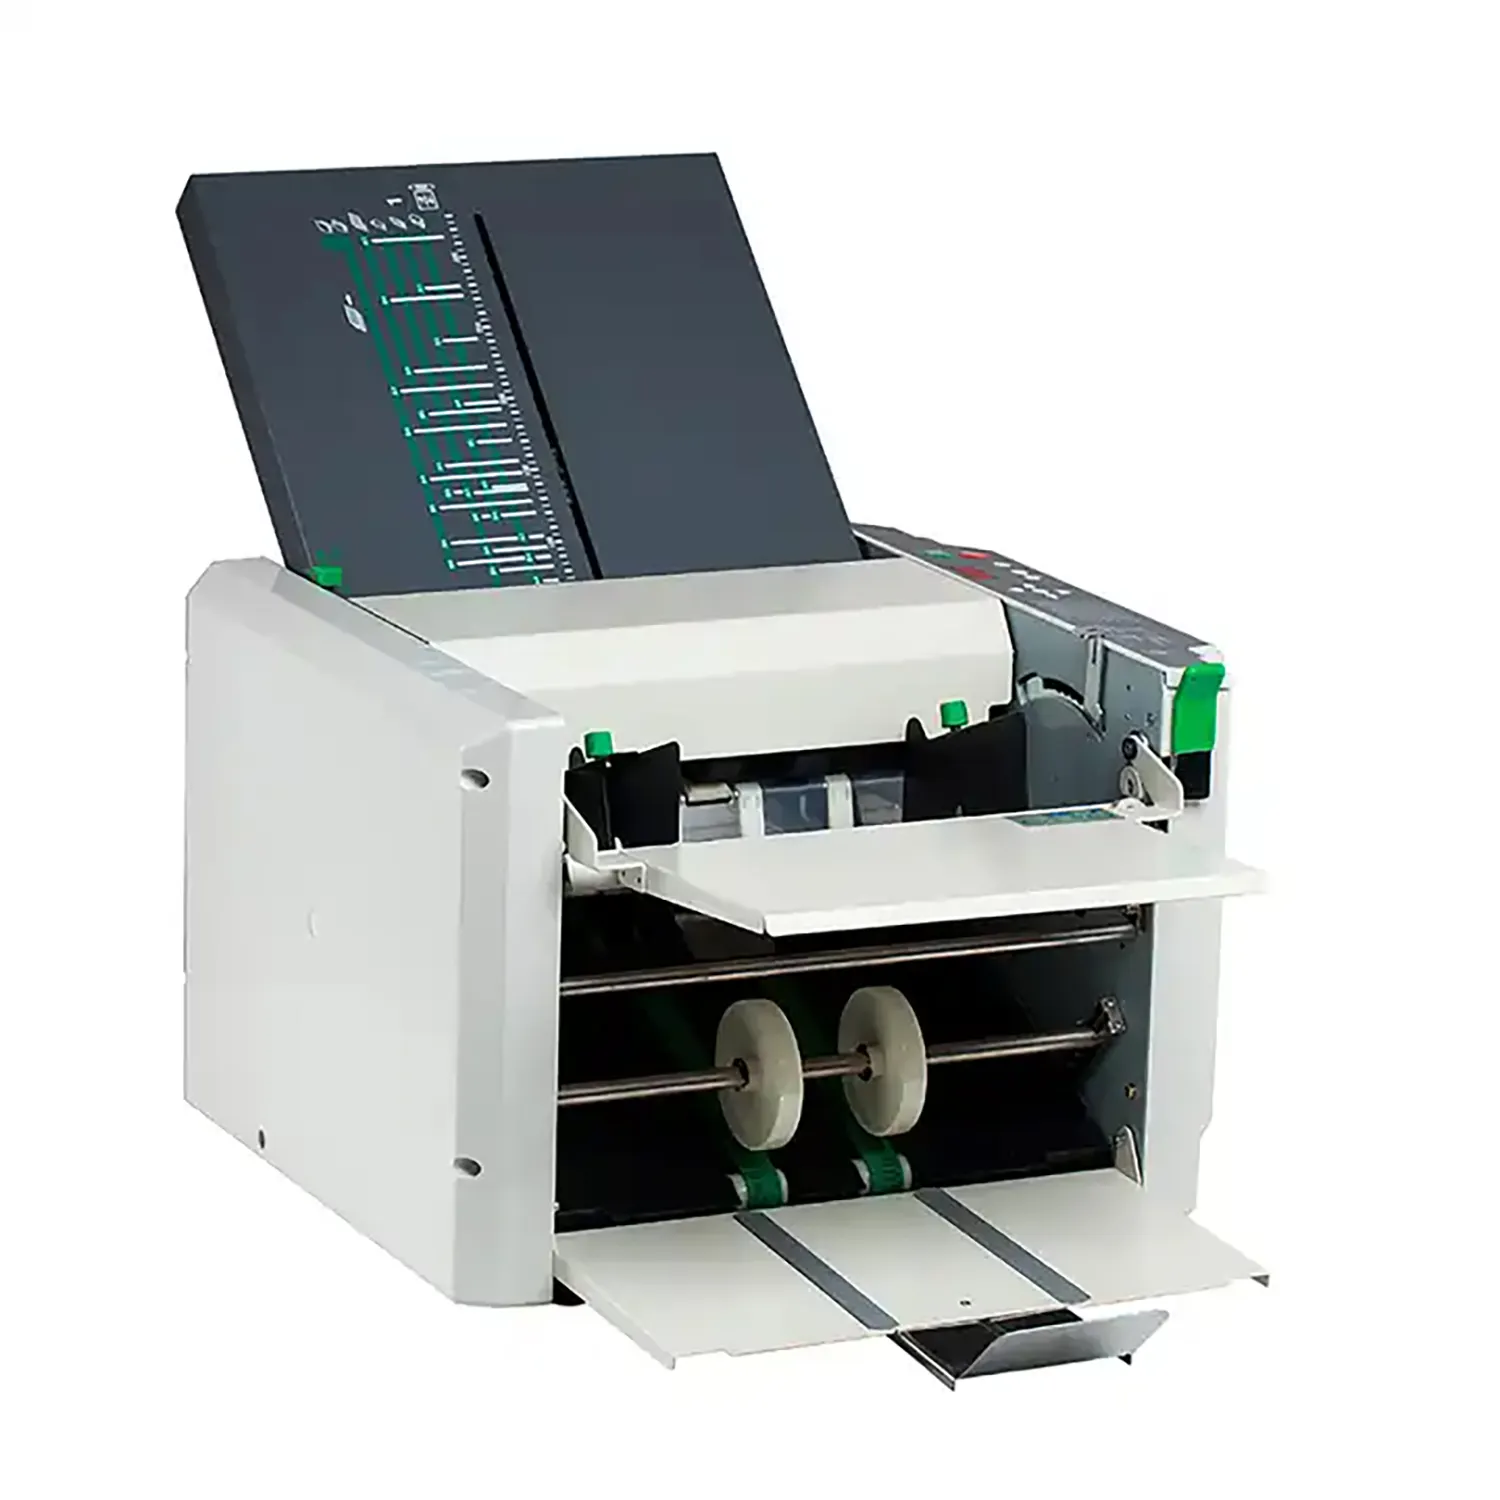 Z297 kağıt katlama makinesi ile manuel ayarlanabilir katlanır plaka kağıt klasör besleme rulo kopya yazma için çift kağıt bant